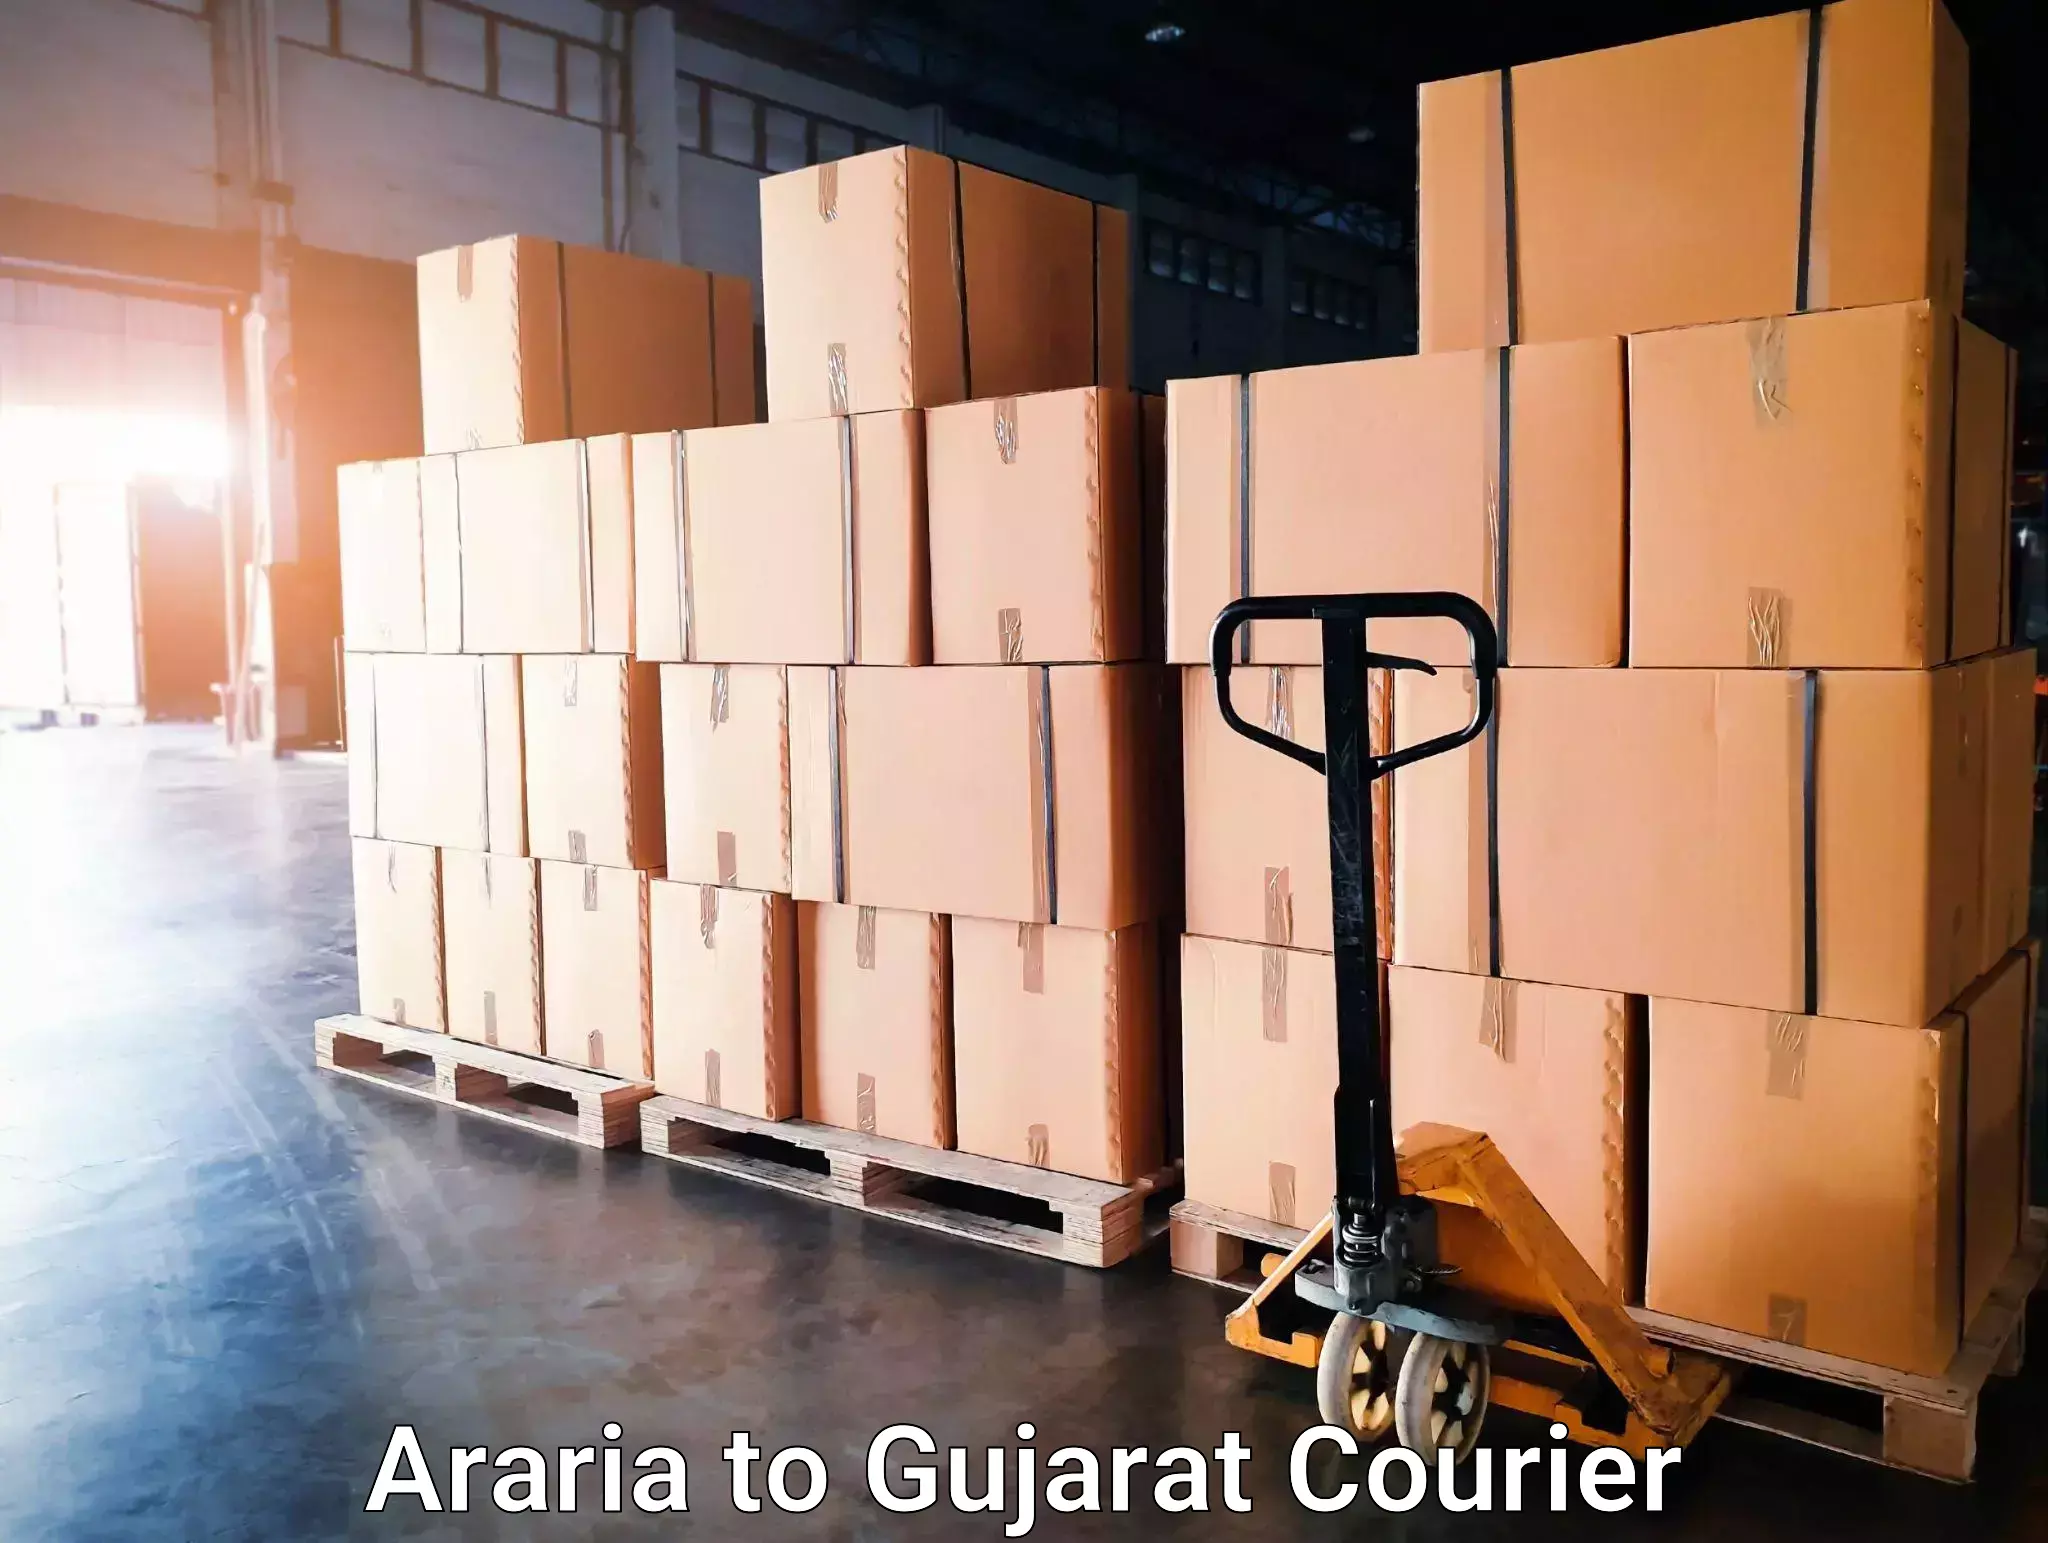 Furniture delivery service Araria to Bilimora